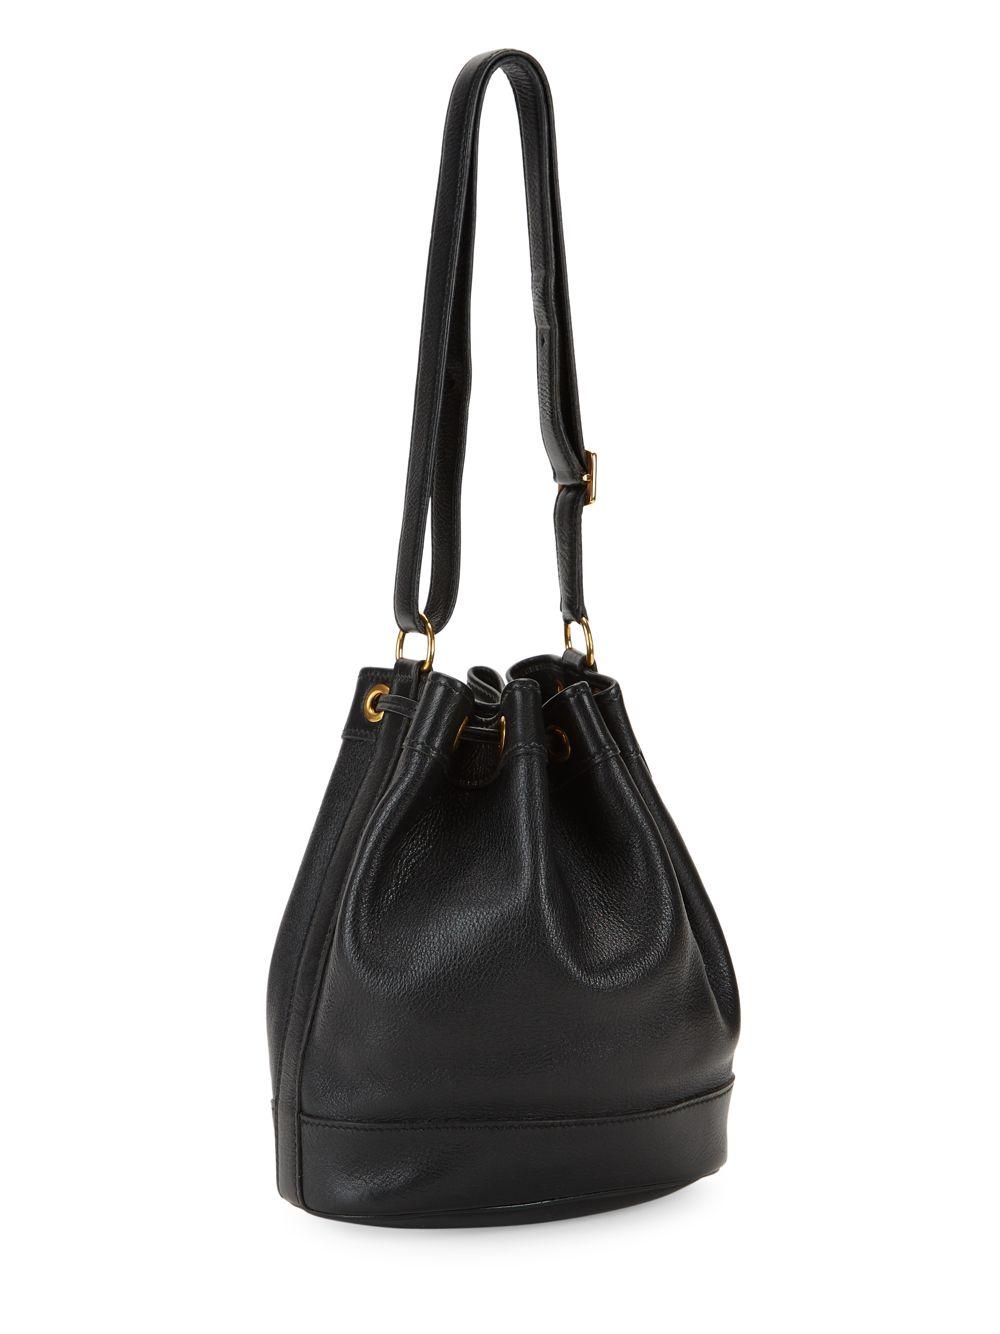 Hermès Vintage Gulliver Leather Bucket Bag in Black